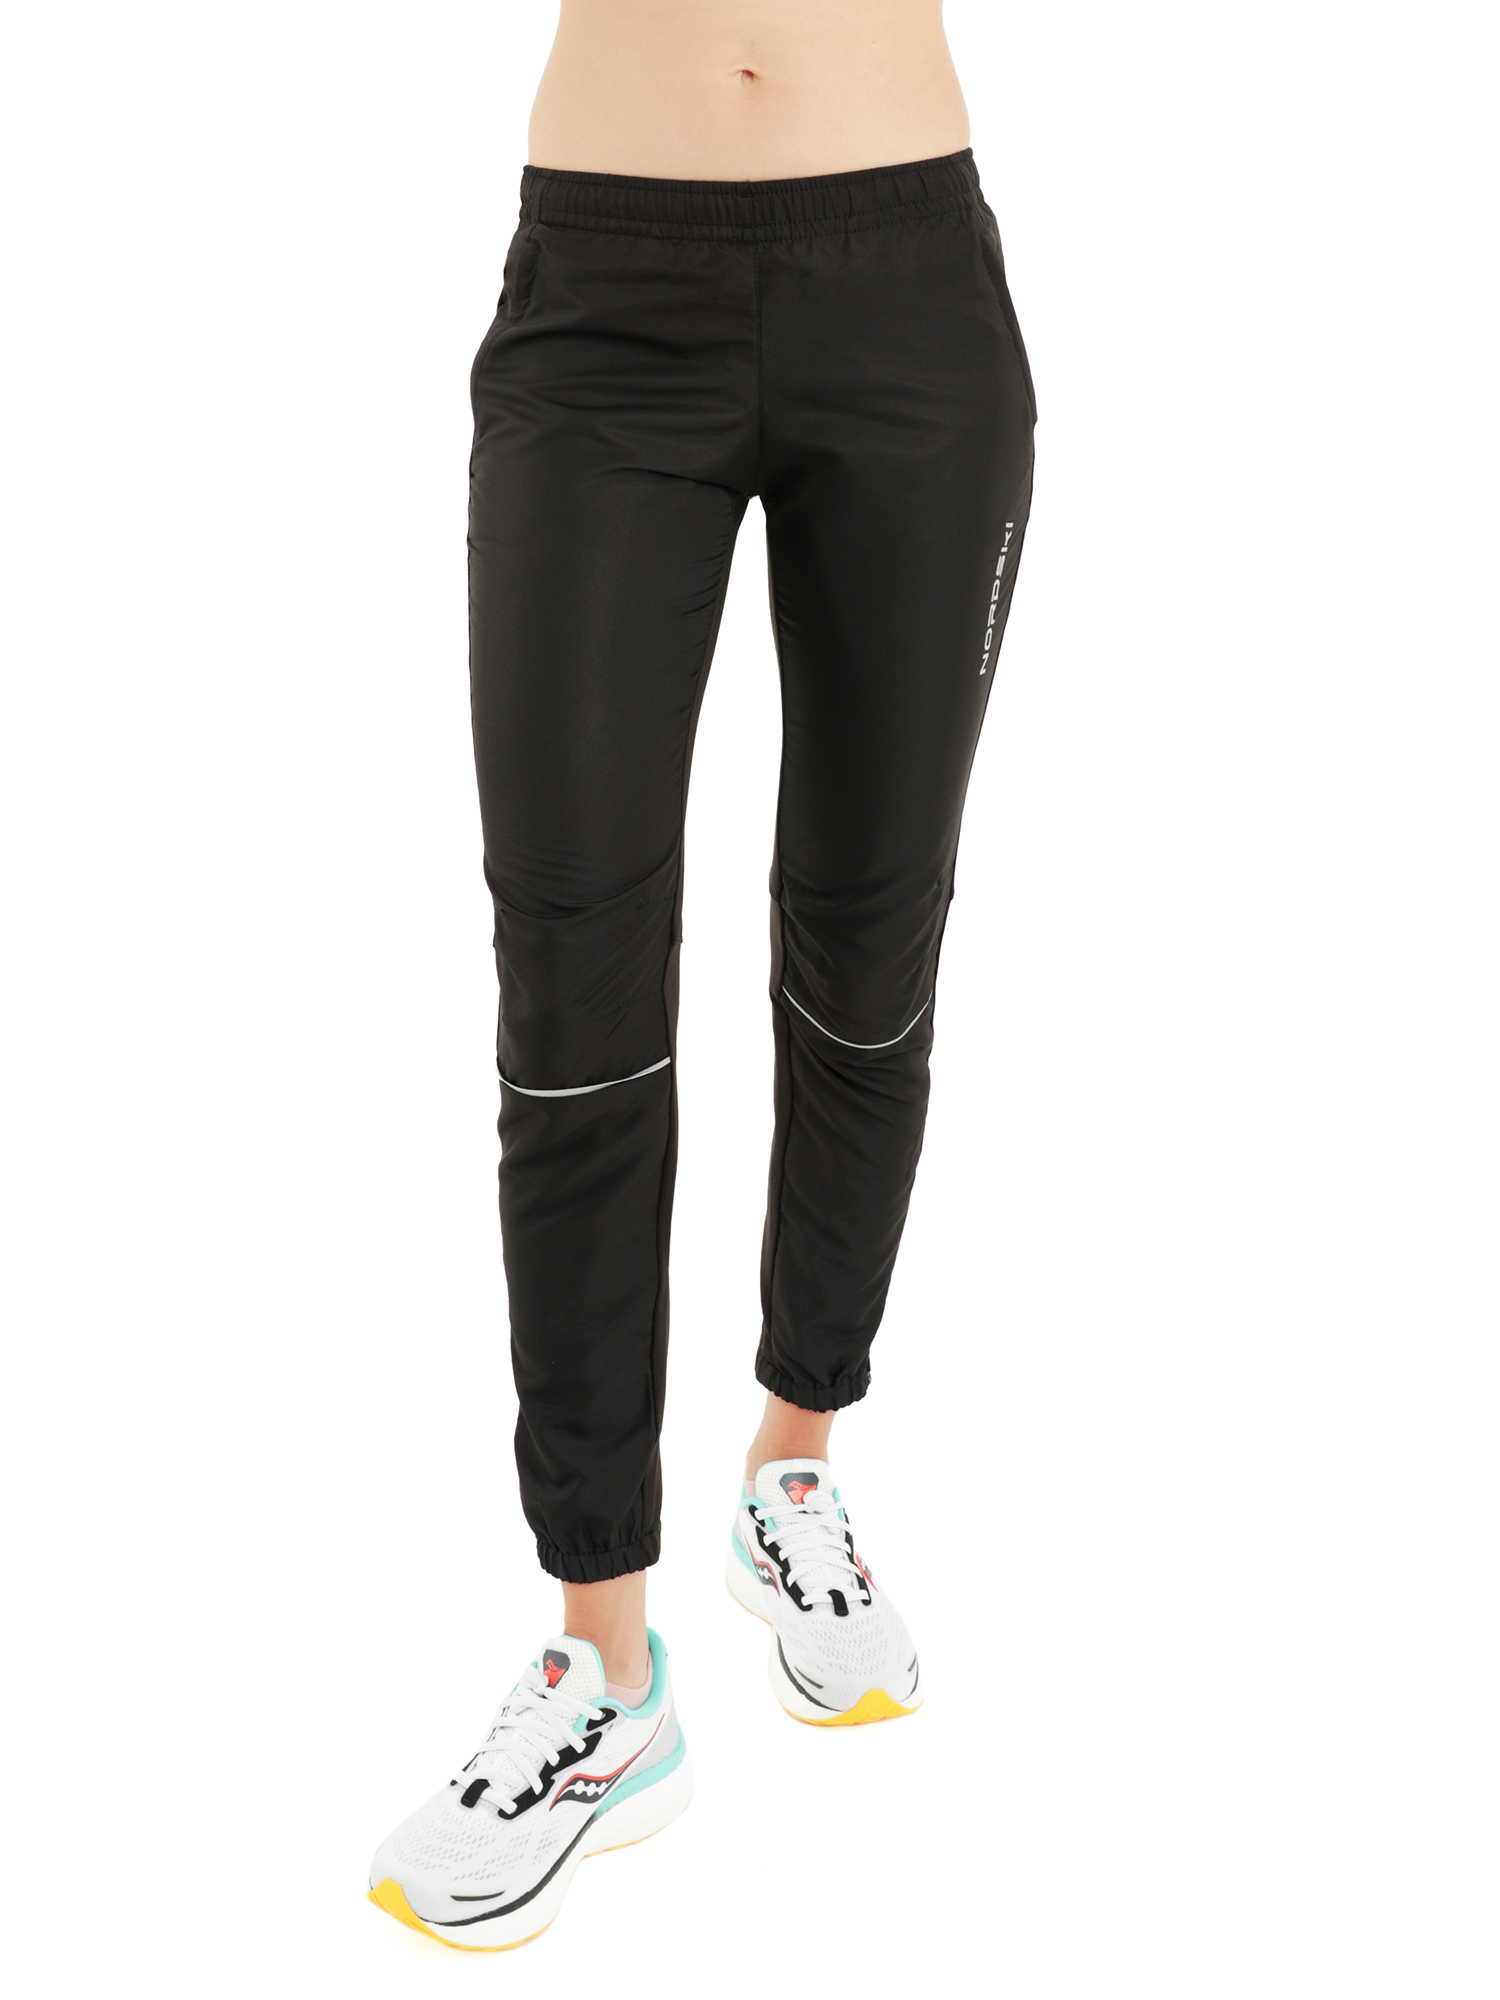 Спортивные брюки женские NordSki Run W черные M